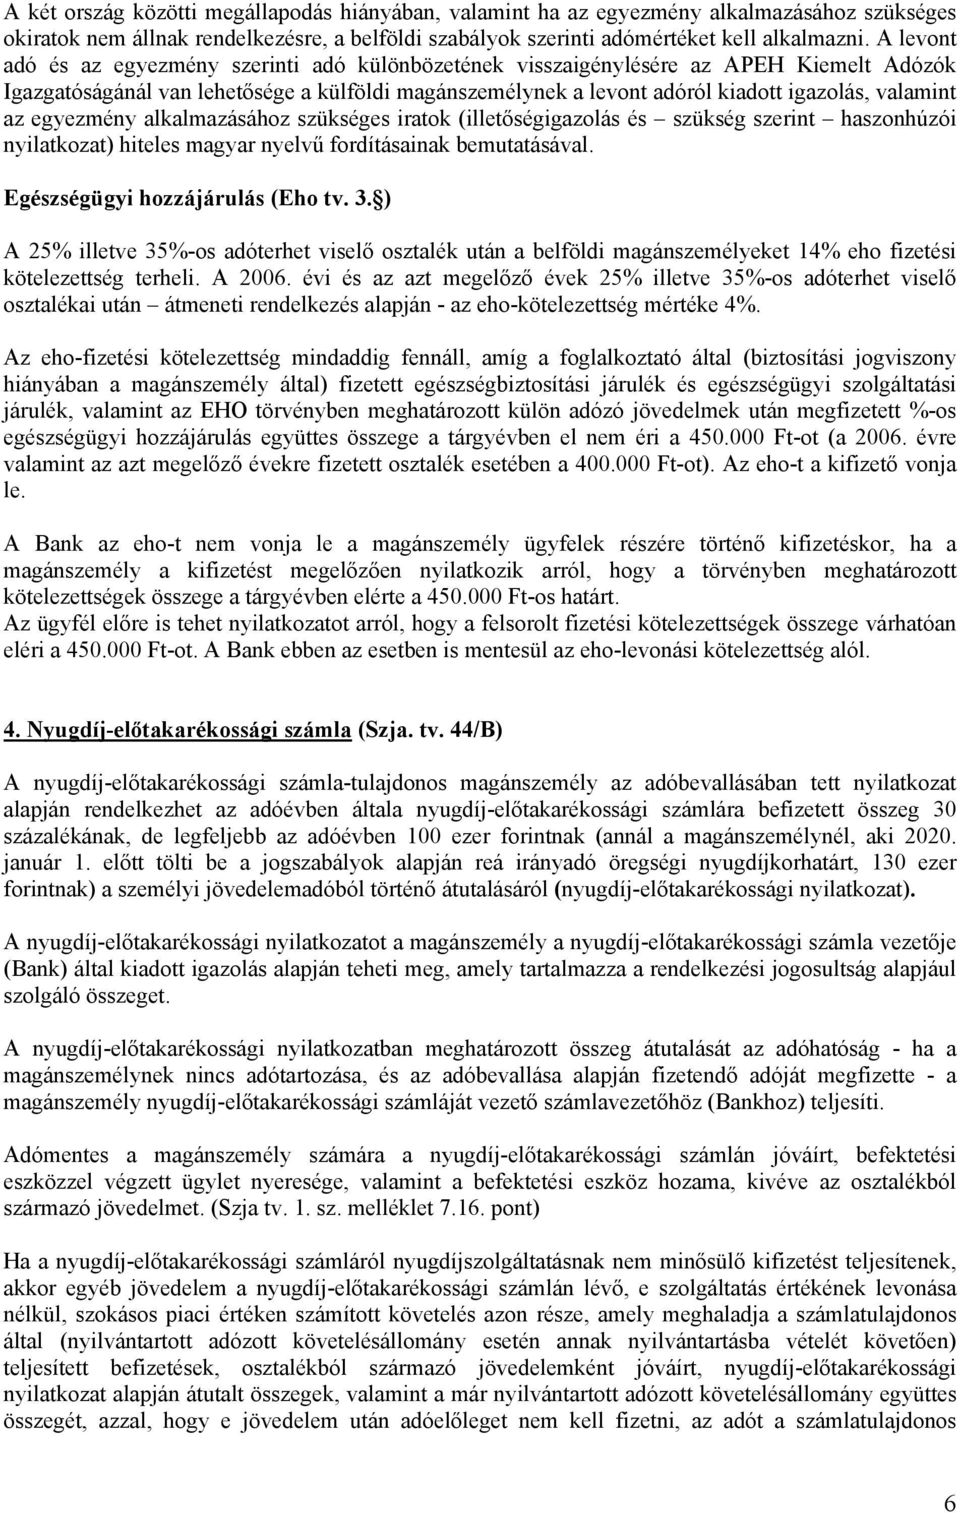 az egyezmény alkalmazásához szükséges iratok (illetőségigazolás és szükség szerint haszonhúzói nyilatkozat) hiteles magyar nyelvű fordításainak bemutatásával. Egészségügyi hozzájárulás (Eho tv. 3.